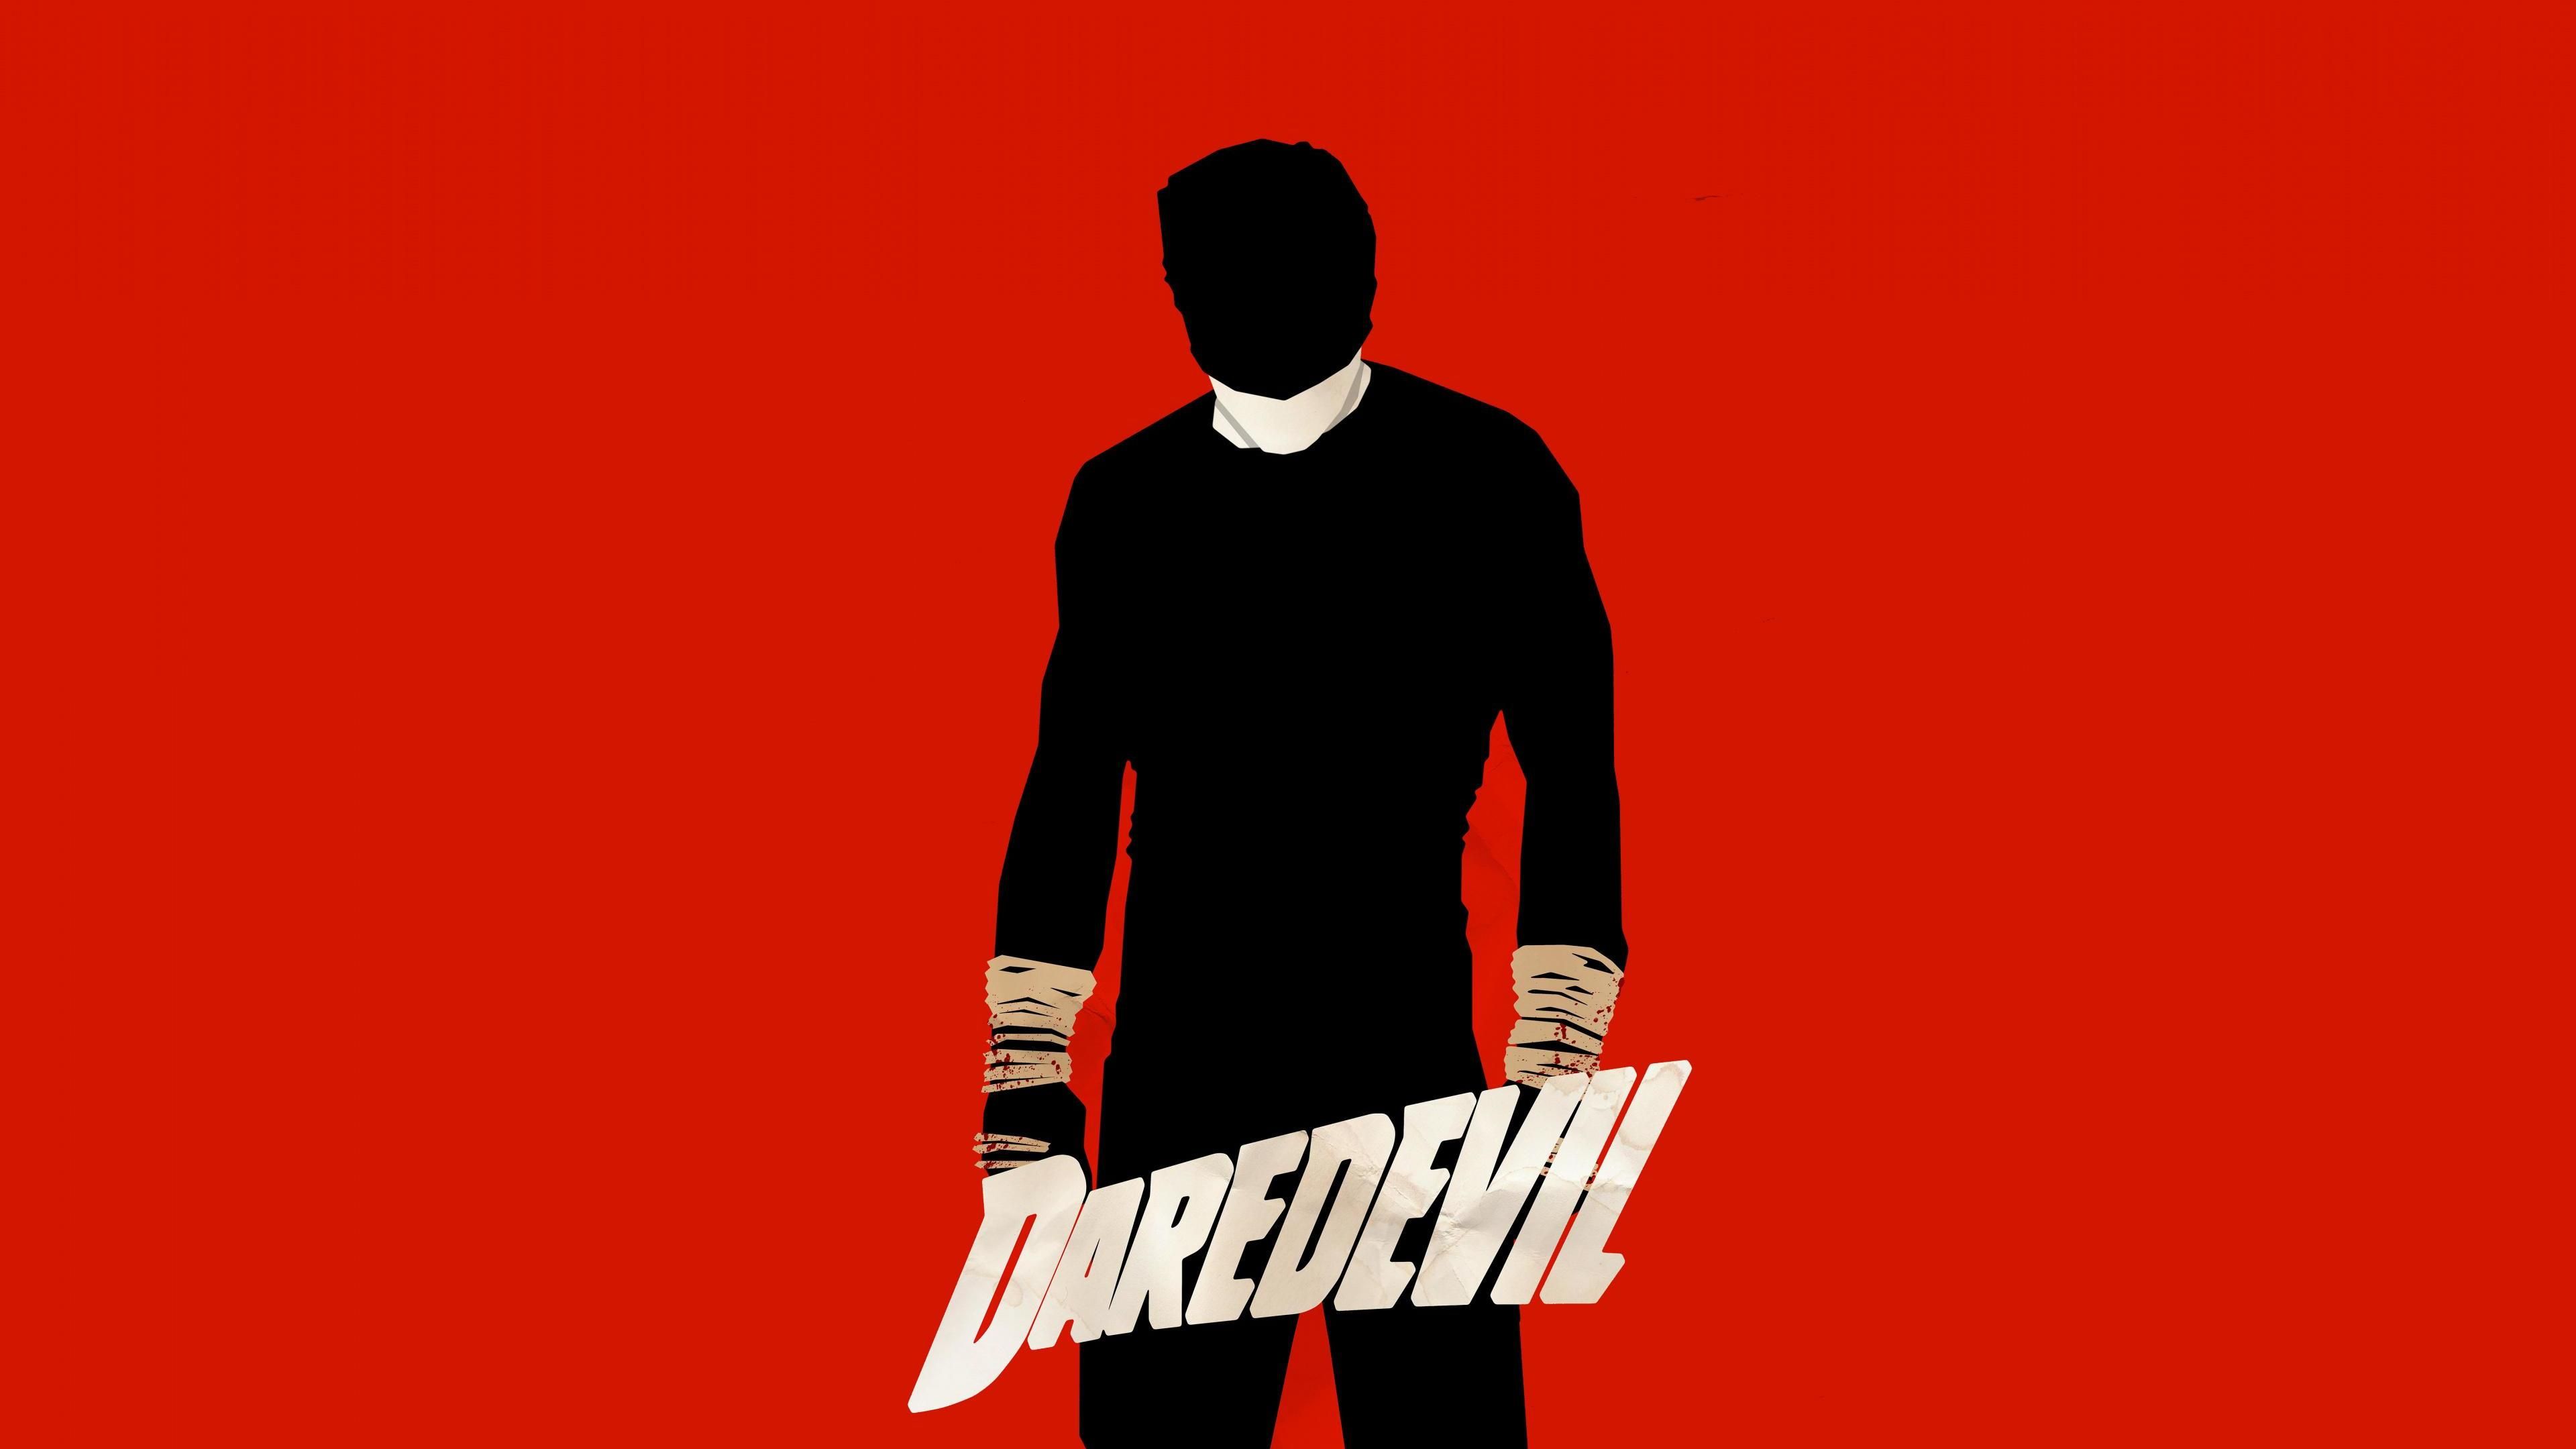 Daredevil Vs Kingpin Poster Wallpapers